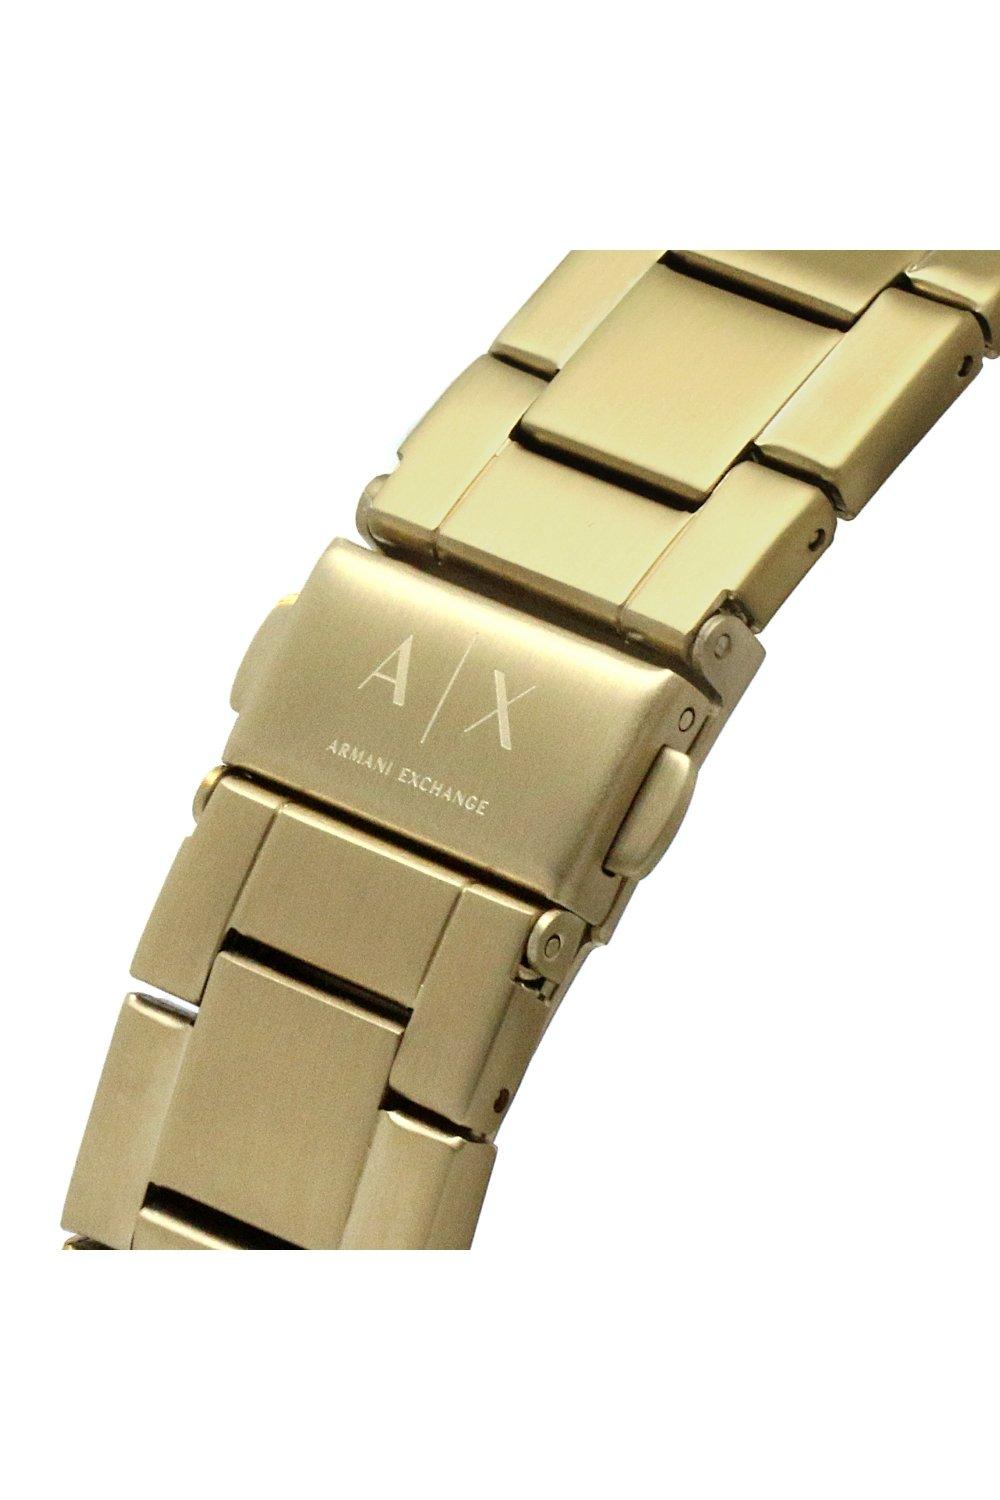 Watches | Stainless Steel Fashion Analogue Quartz Watch - Ax1854 | Armani  Exchange | Quarzuhren